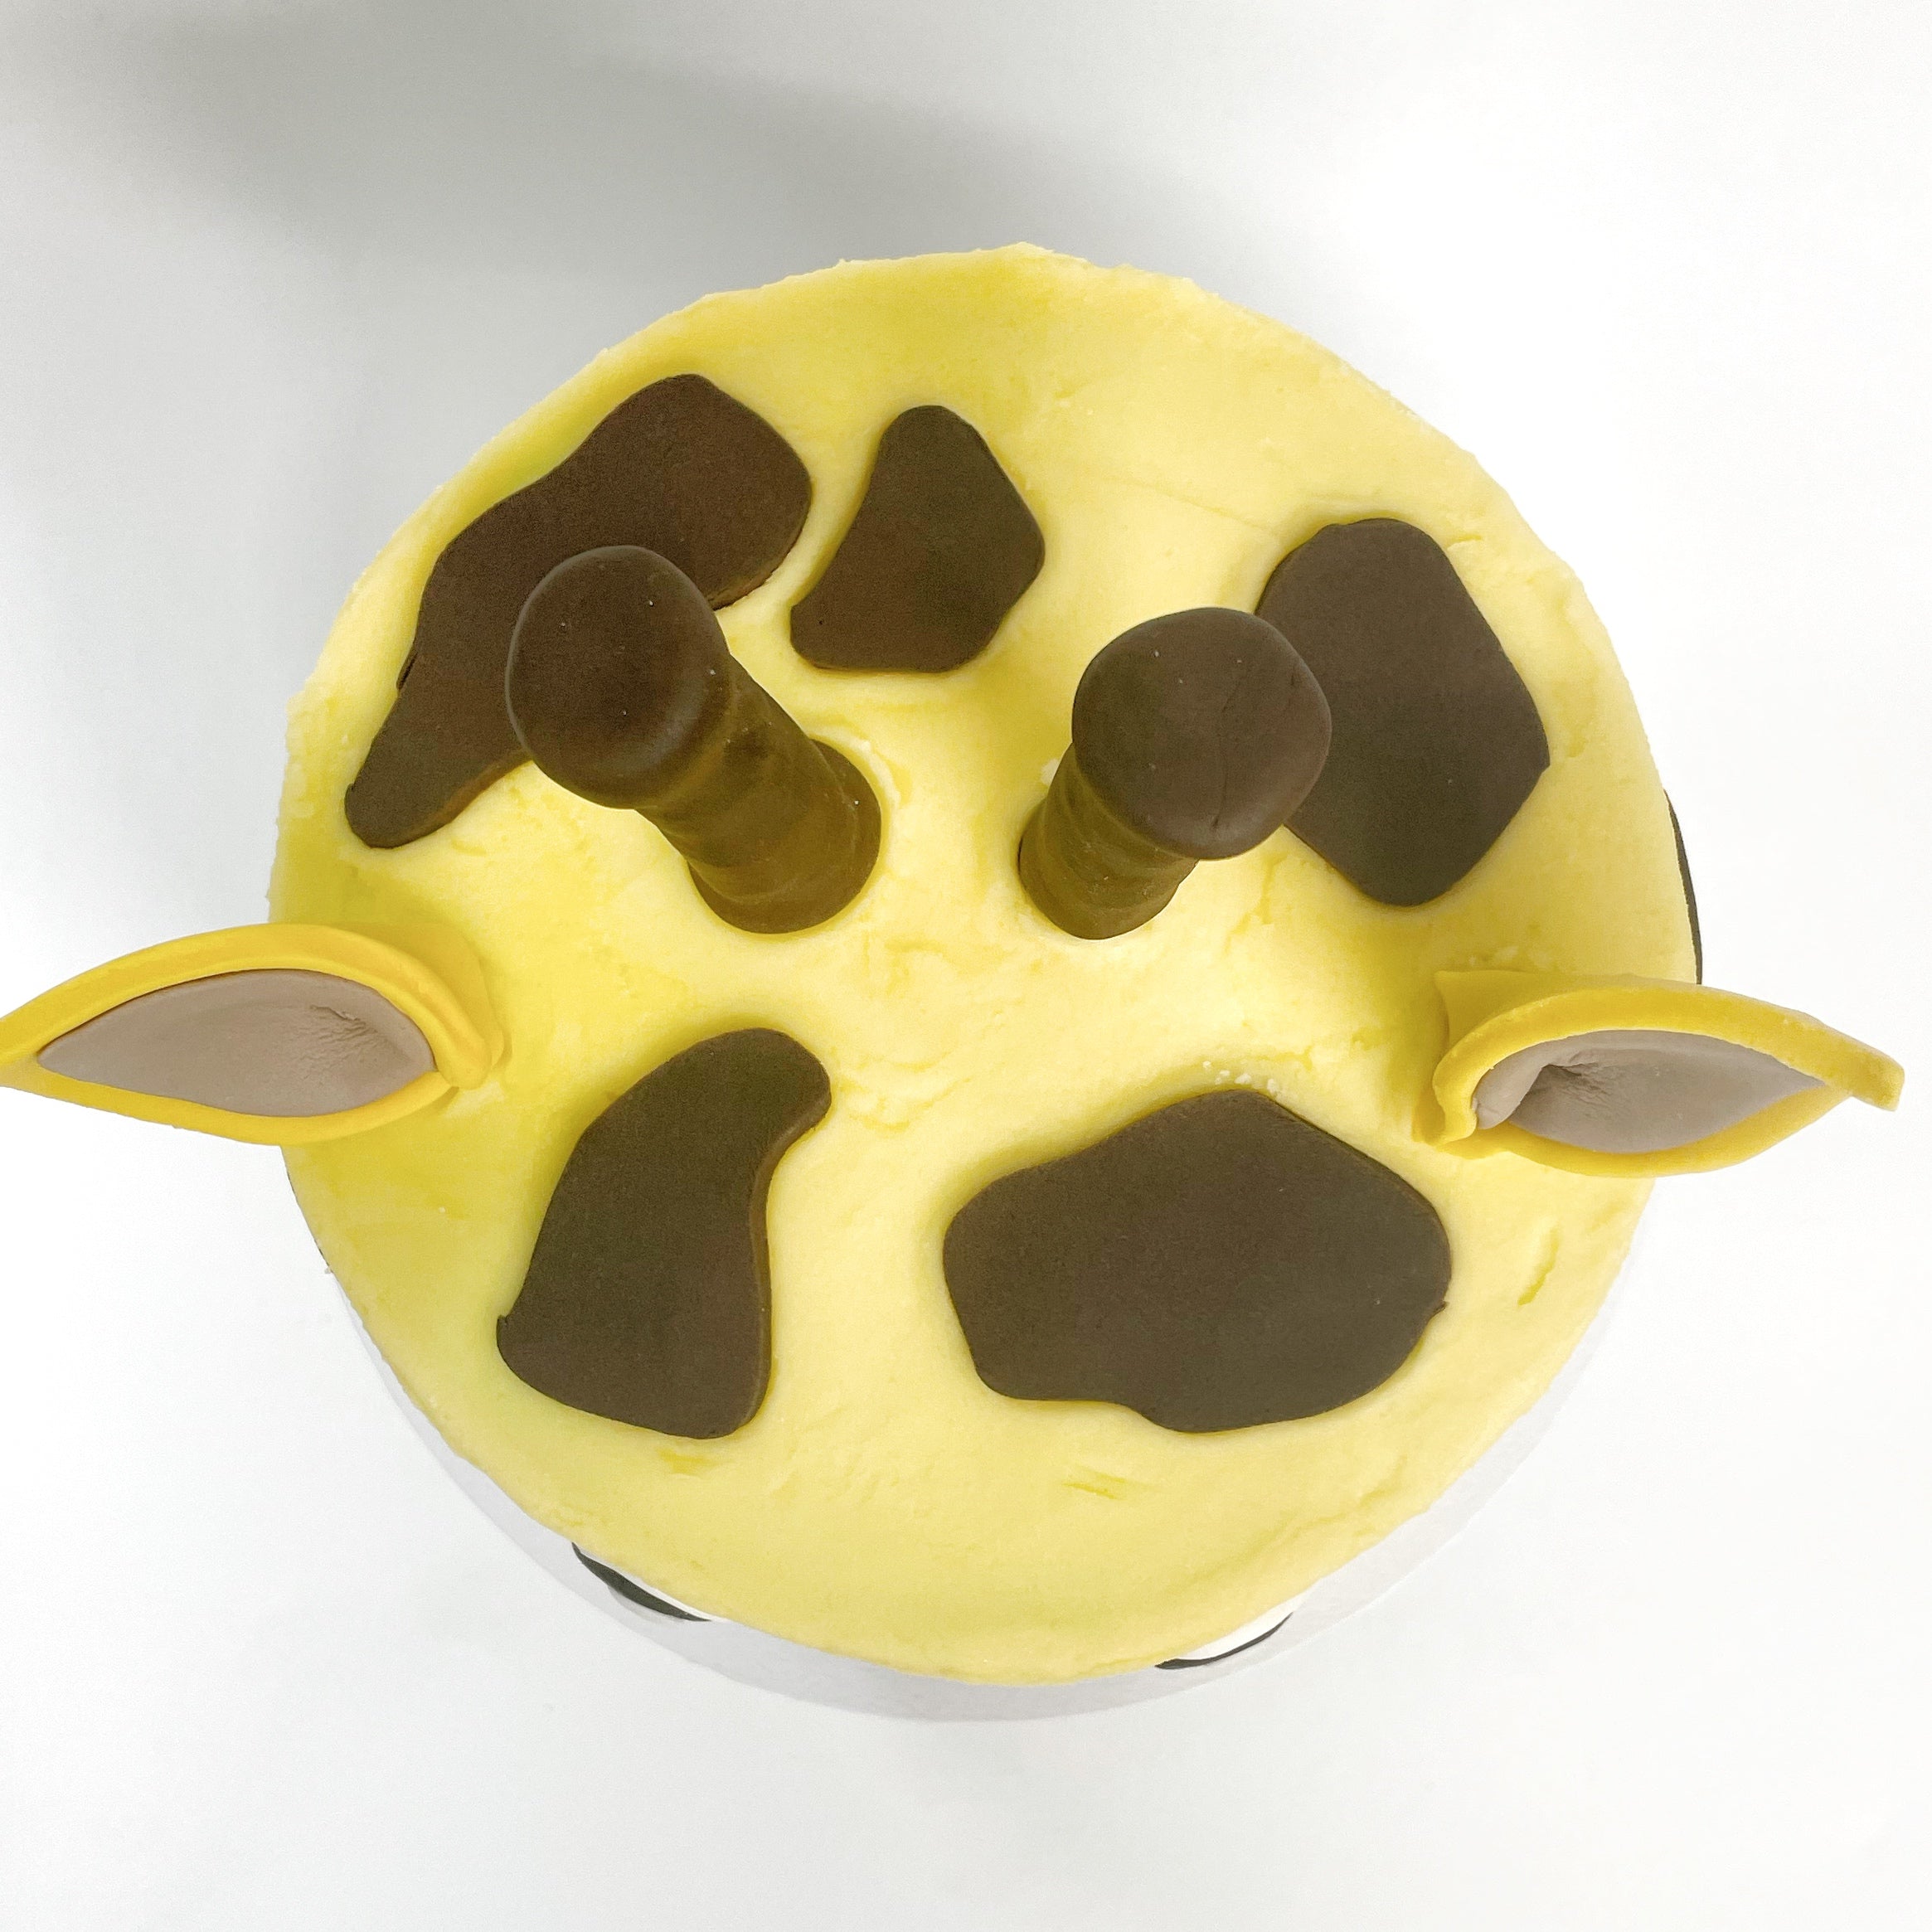 pro/chef] I made a giraffe cake Food Recipes | Giraffe birthday cakes, Giraffe  cakes, Cake decorating